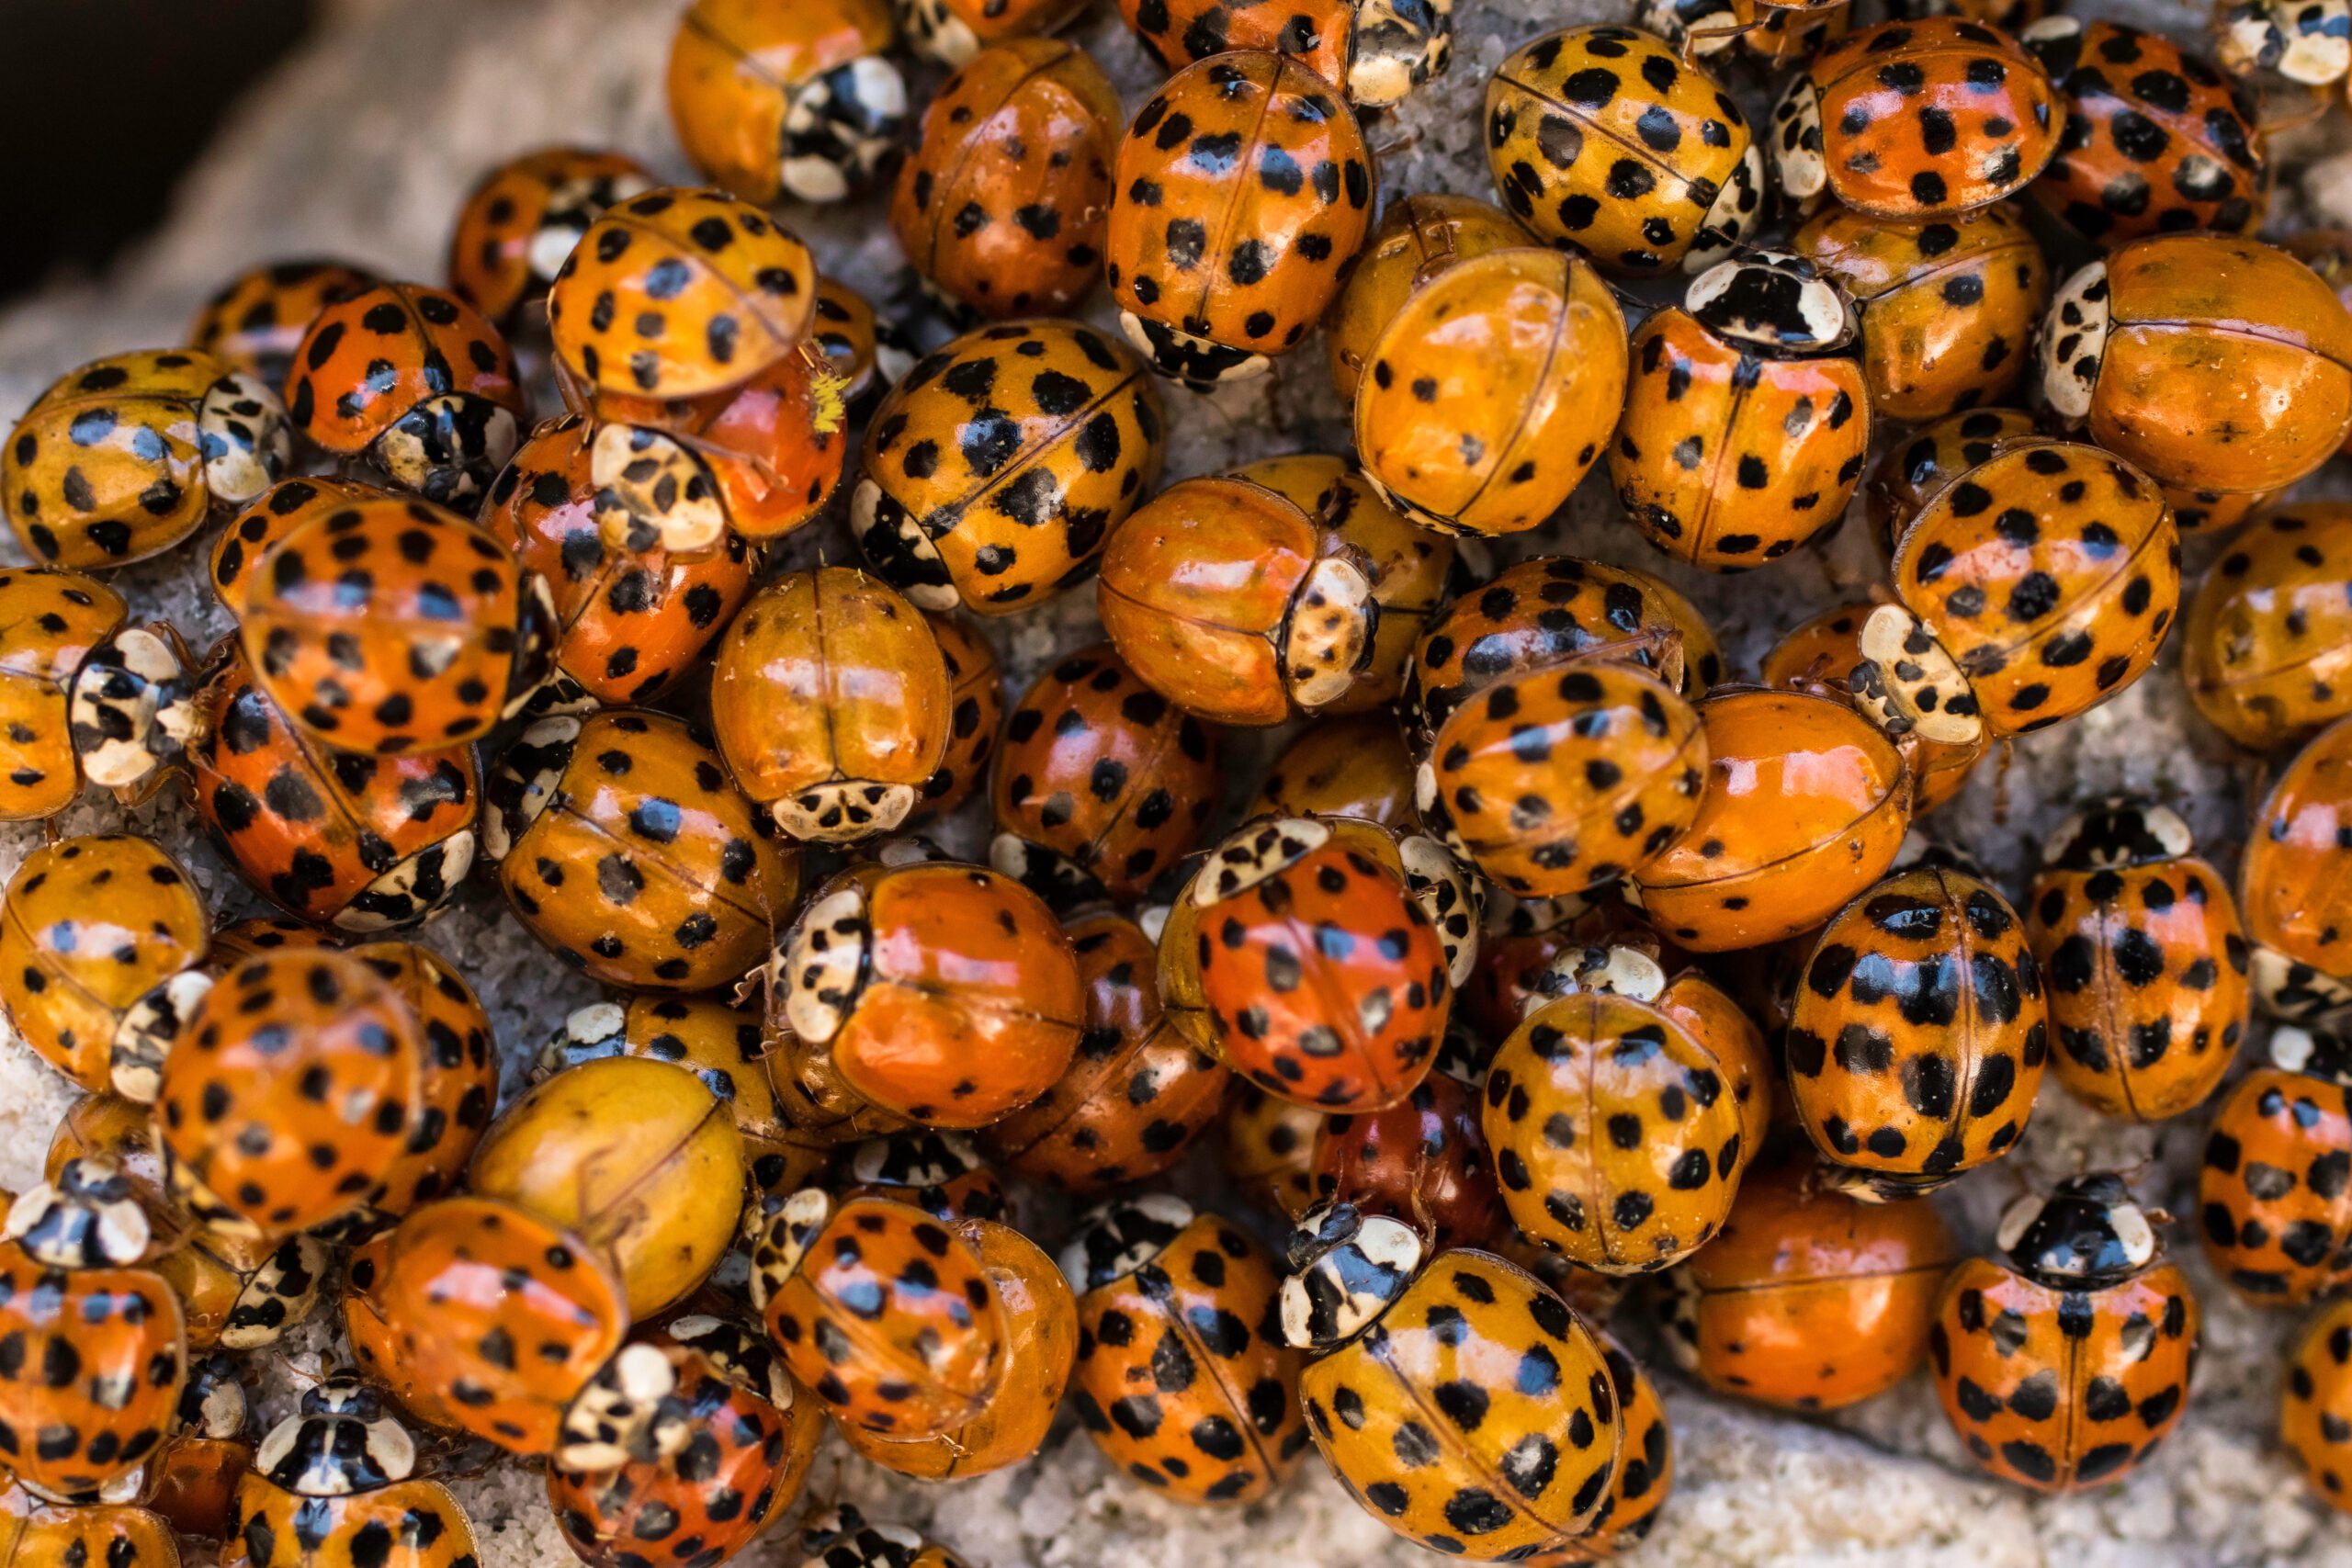 Ladybug infestation